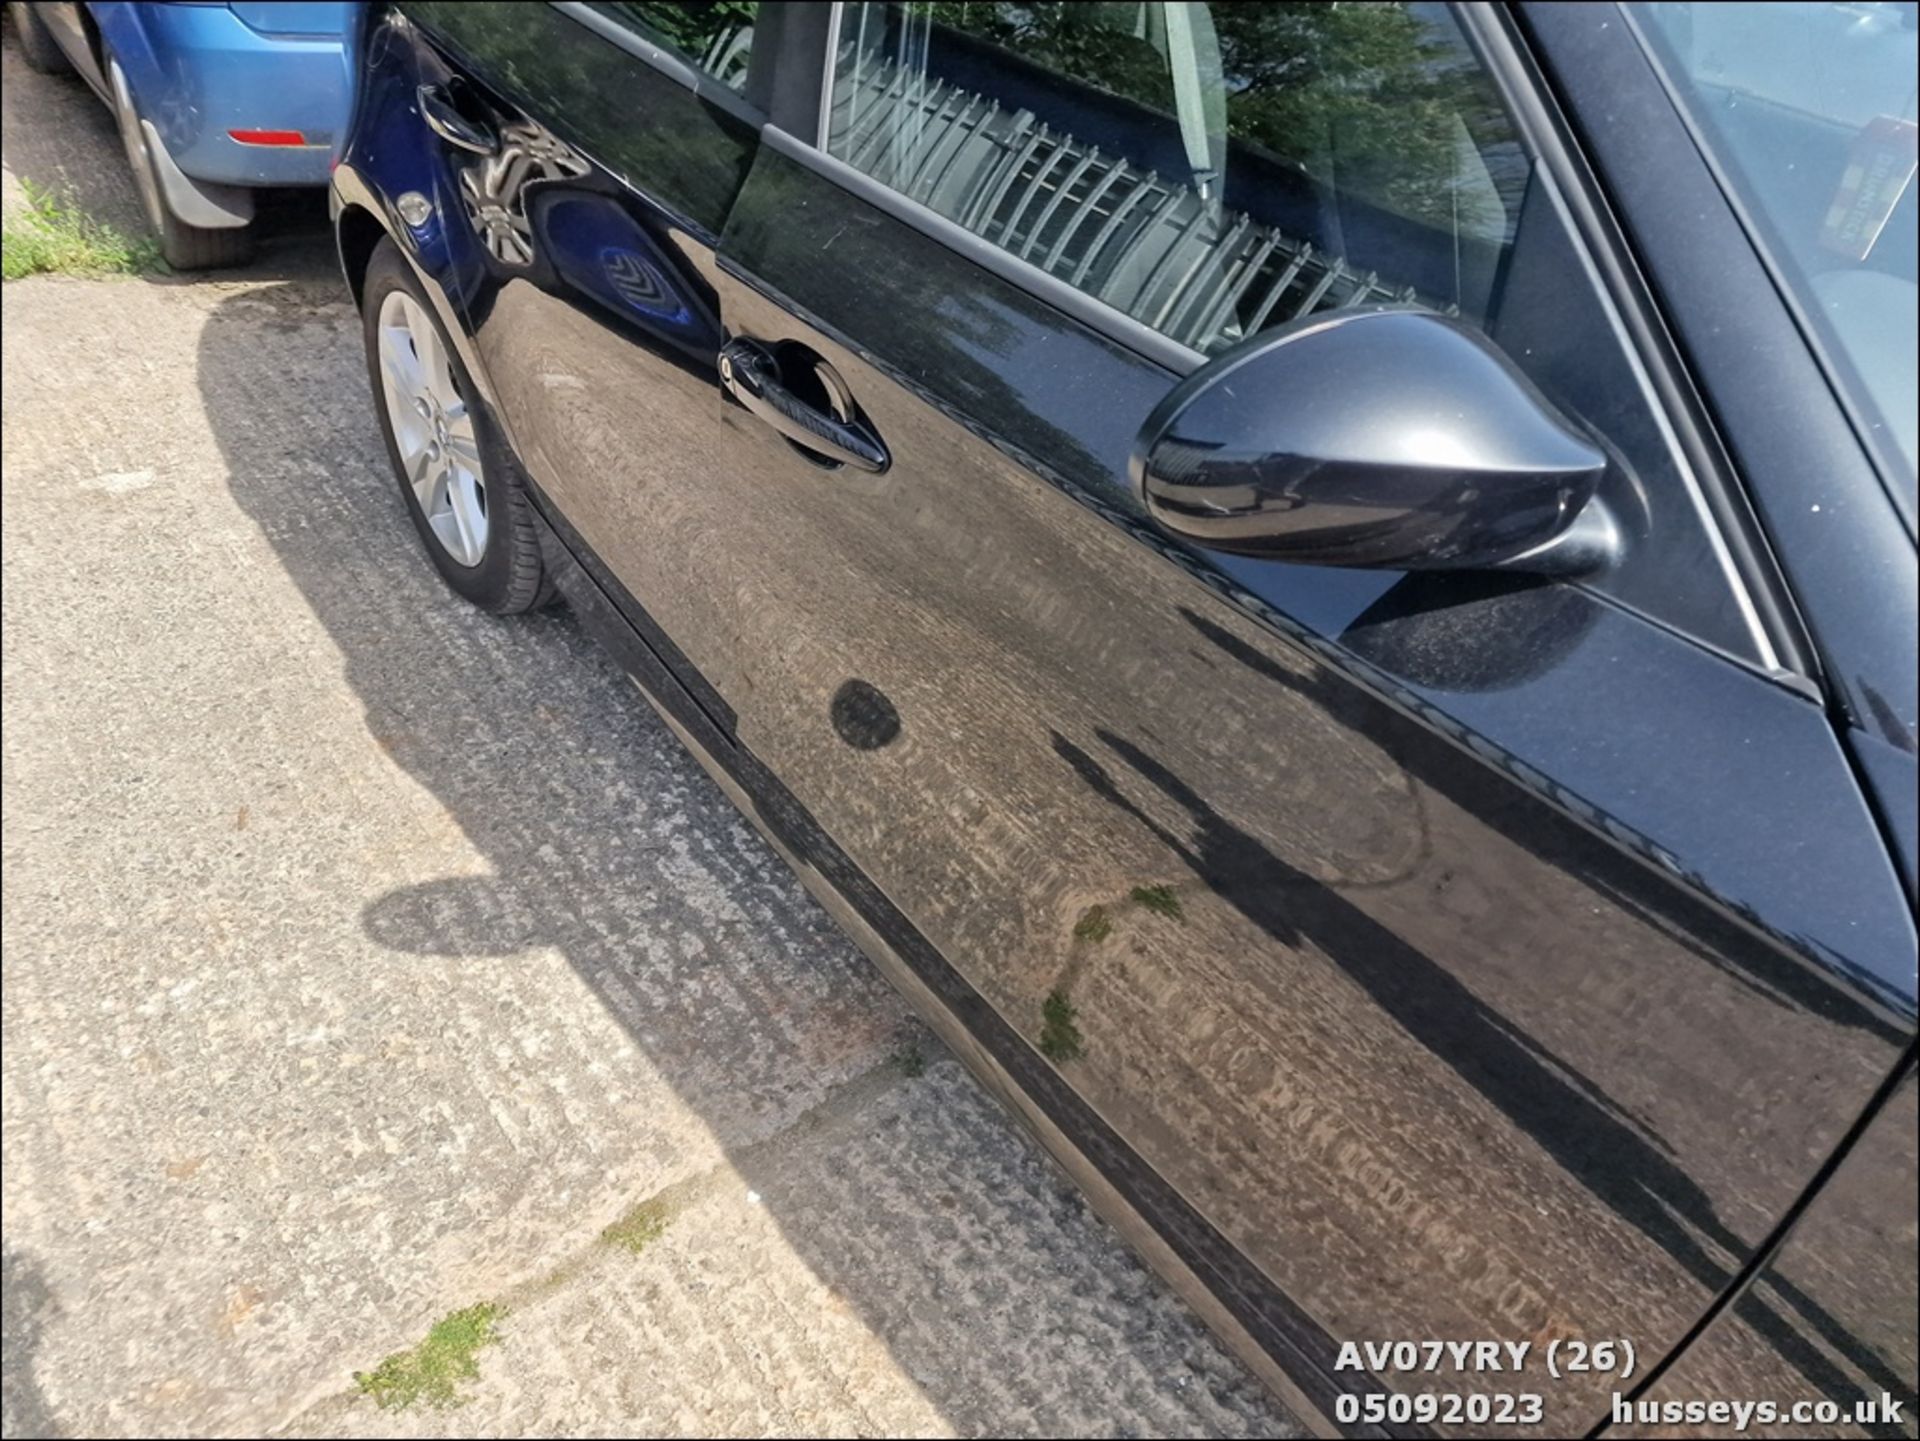 07/07 BMW 116I SE - 1596cc 5dr Hatchback (Black, 102k) - Image 27 of 41